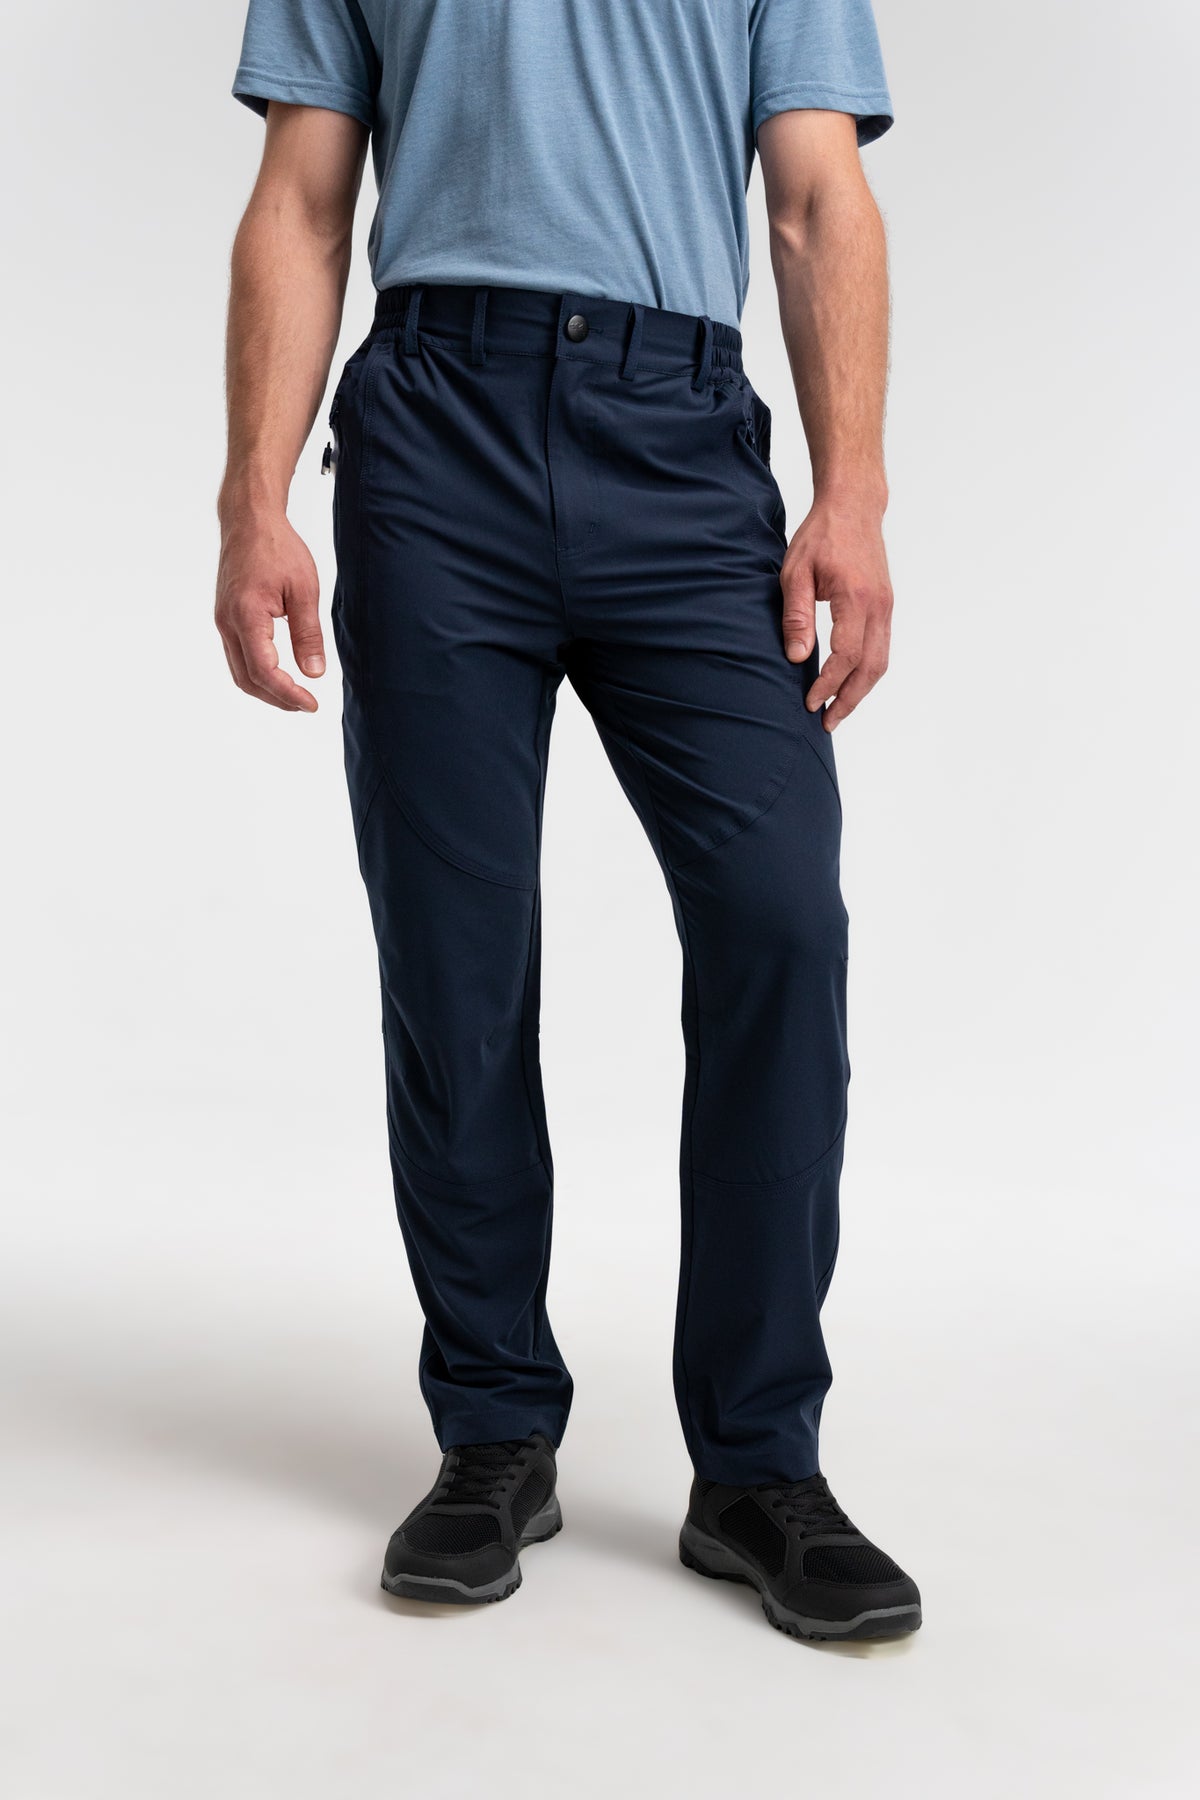 Men's Explorer Water Resistant Summer Pants – Northbound Gear